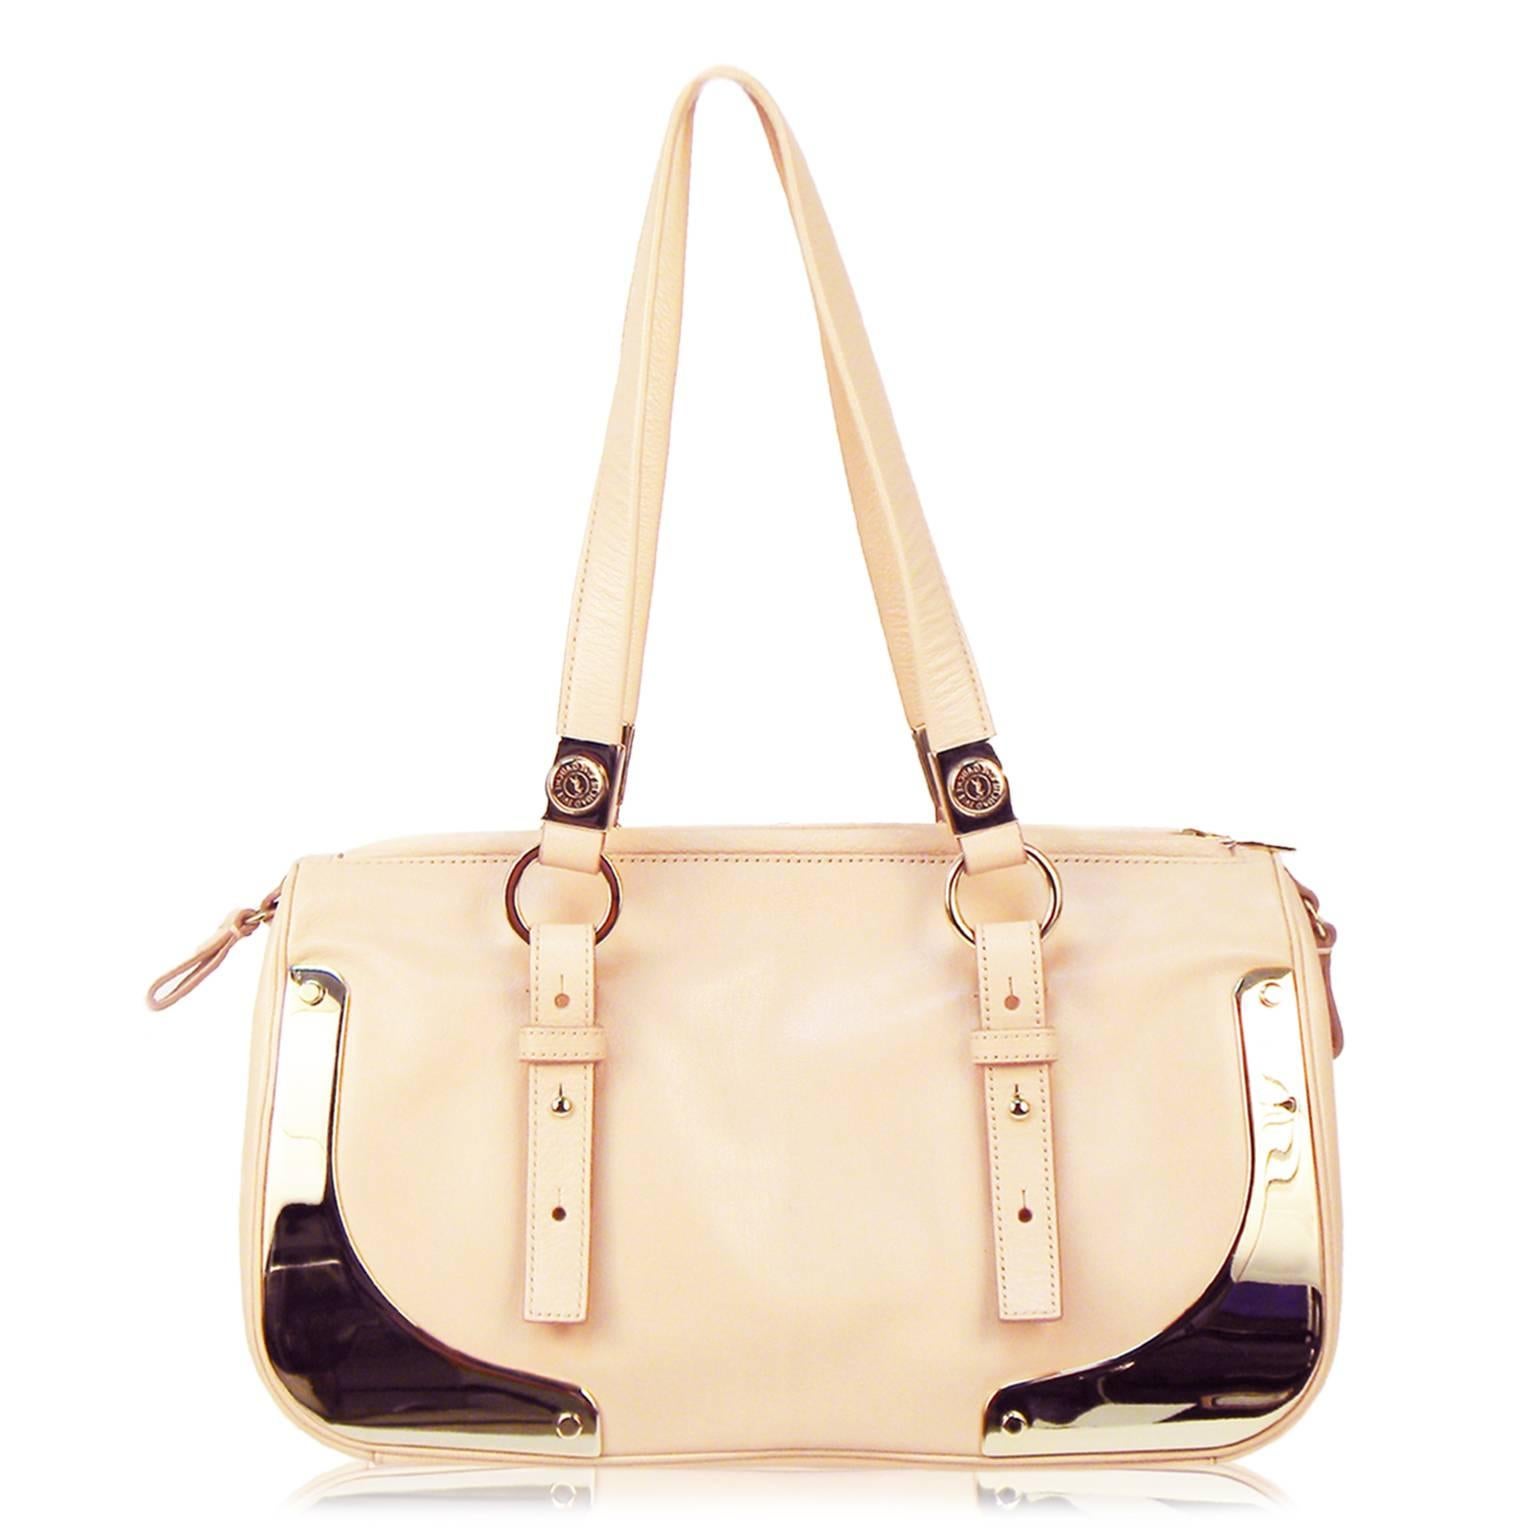 Pale pink Saint Laurent satchel bag with gold hardware and adjustable shoulder straps. Zipper Closure. 